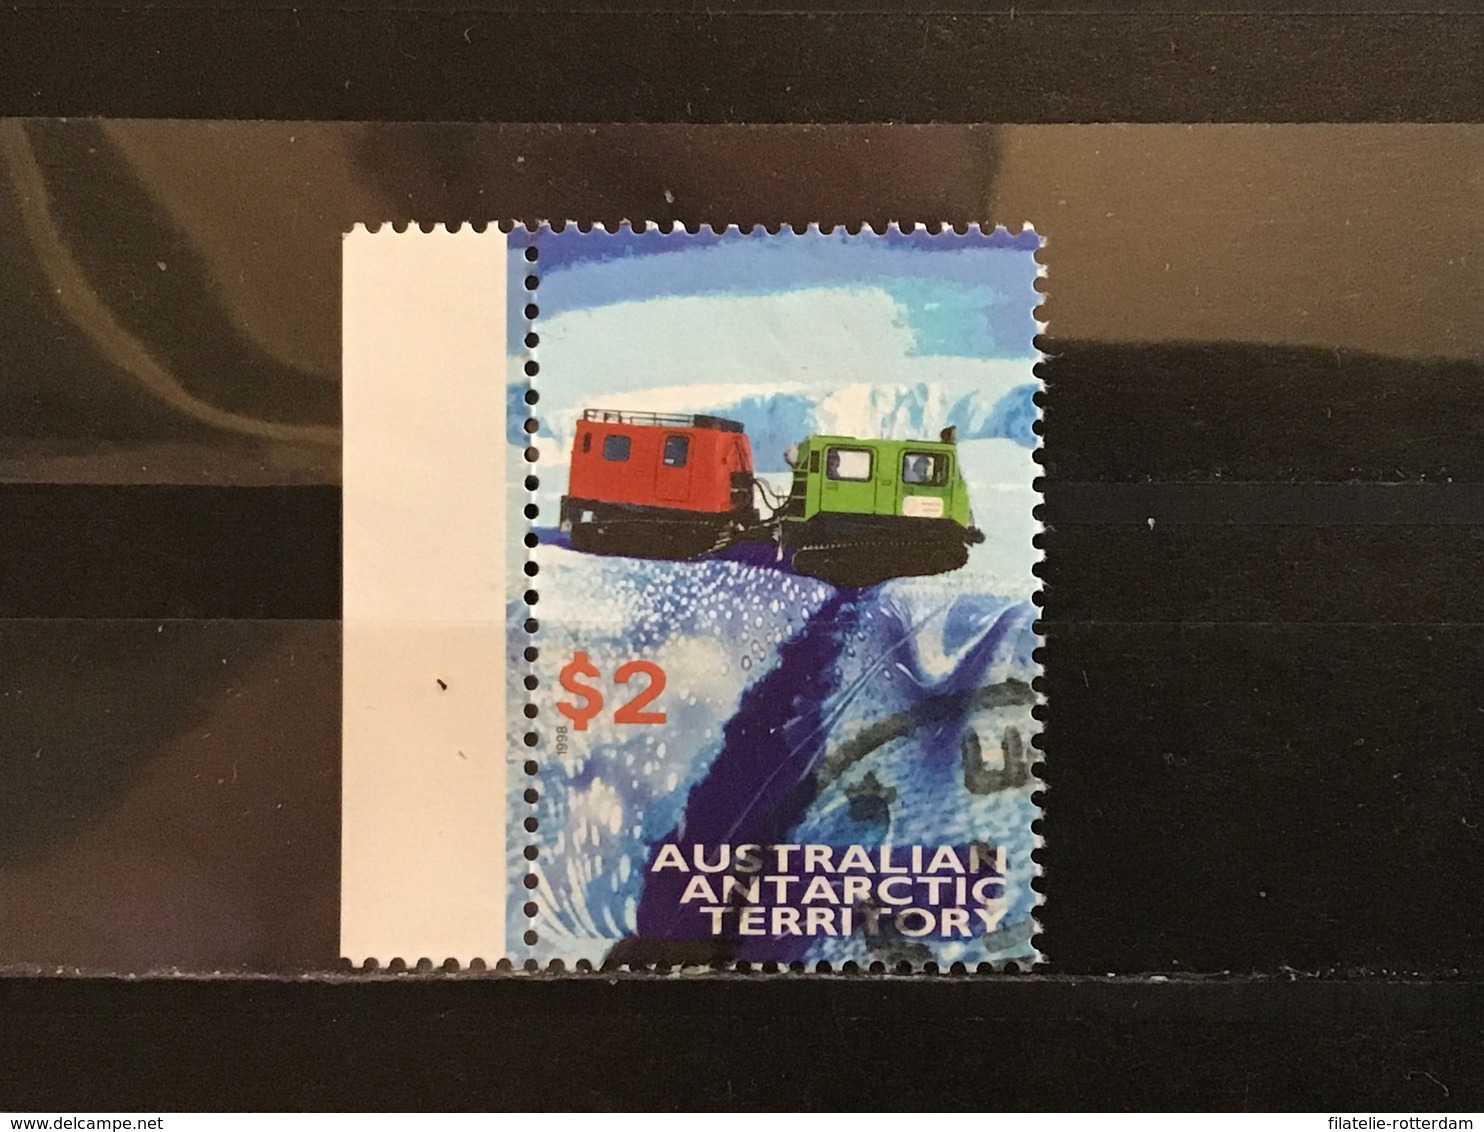 Australisch Antarctica / AAT - Transportmiddelen (2) 1998 - Gebruikt